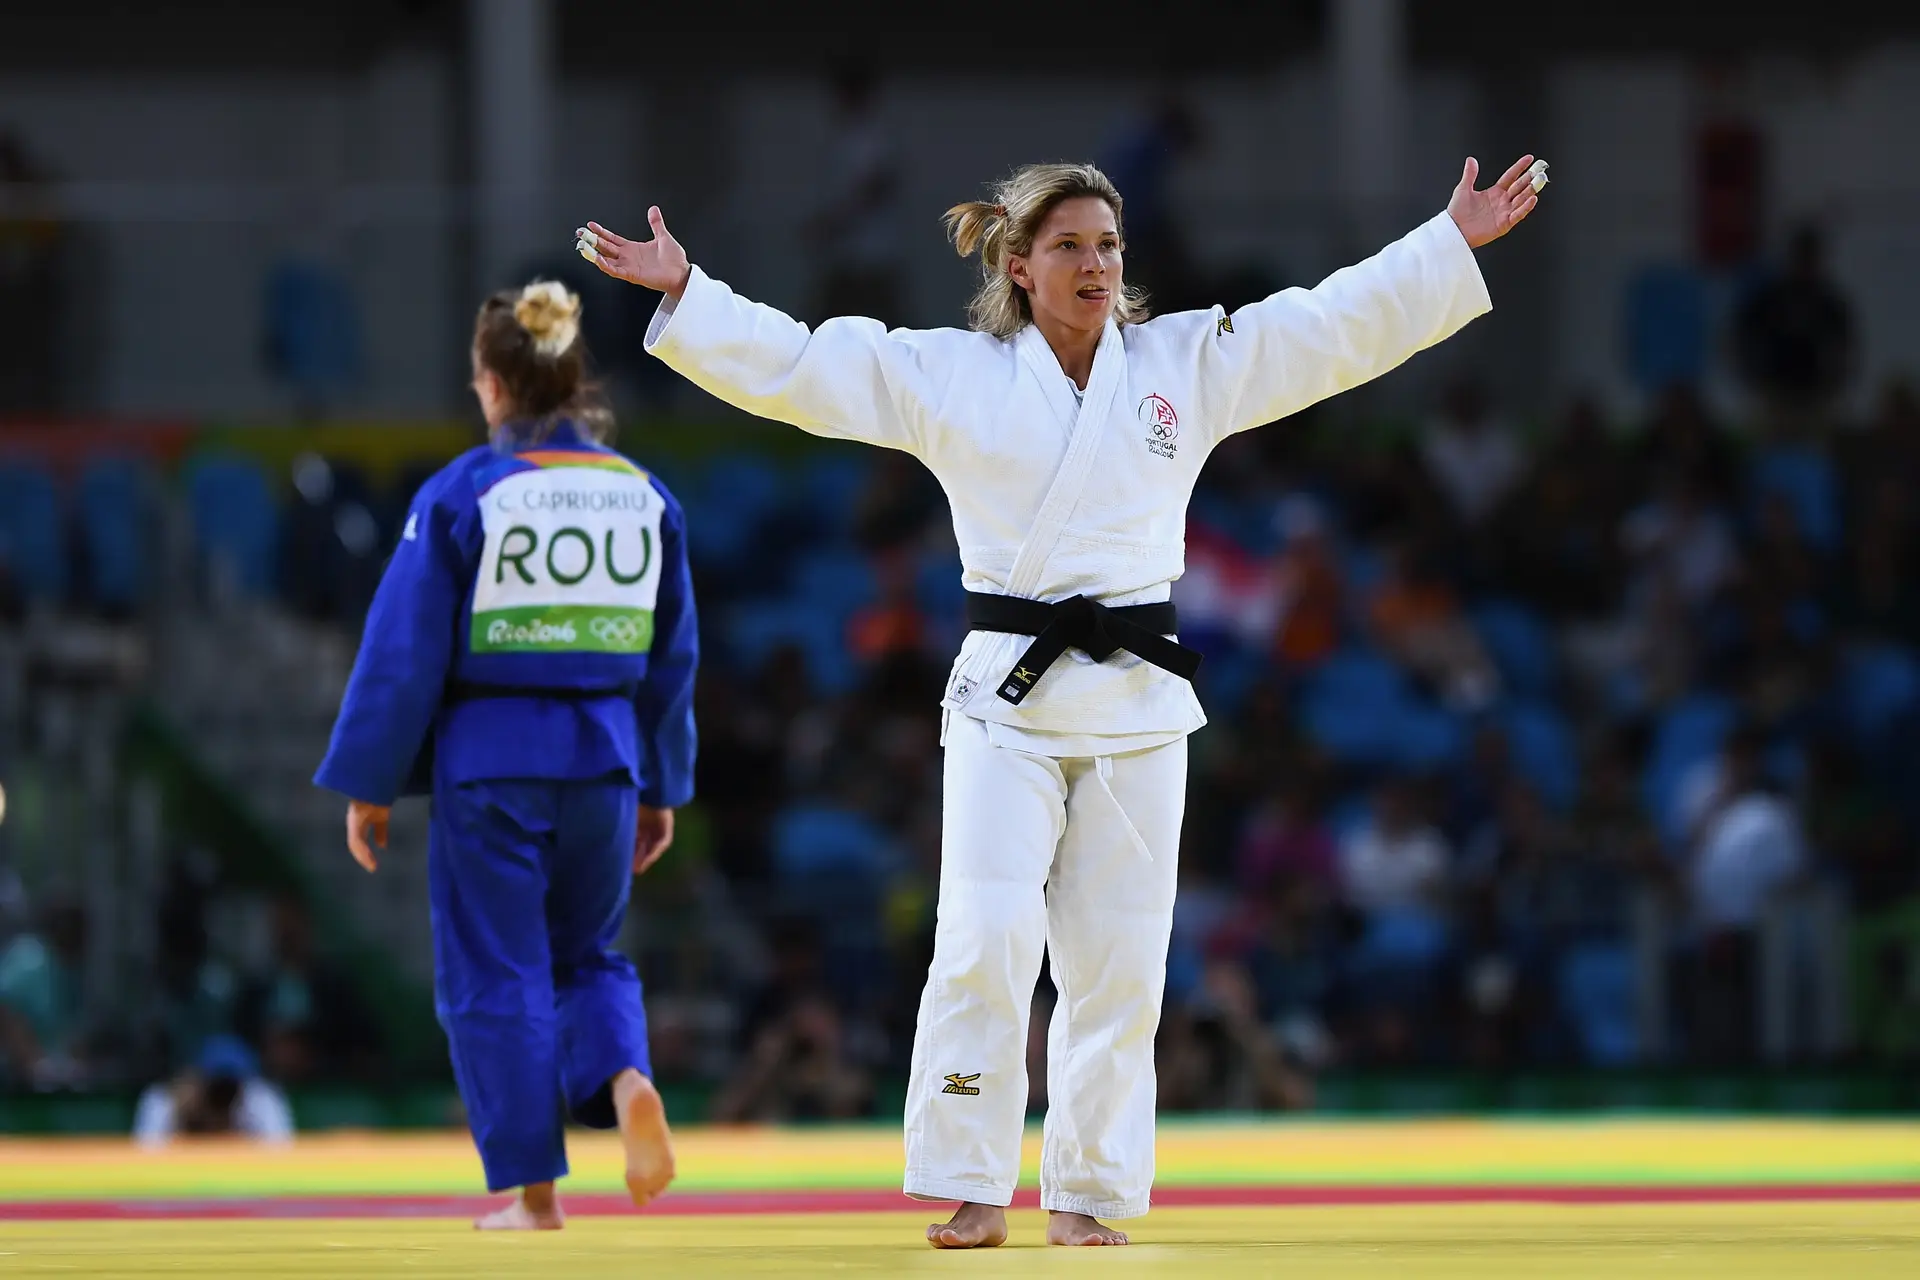 Presidente da Federação de Judo rejeita críticas e diz que existem normas a cumprir